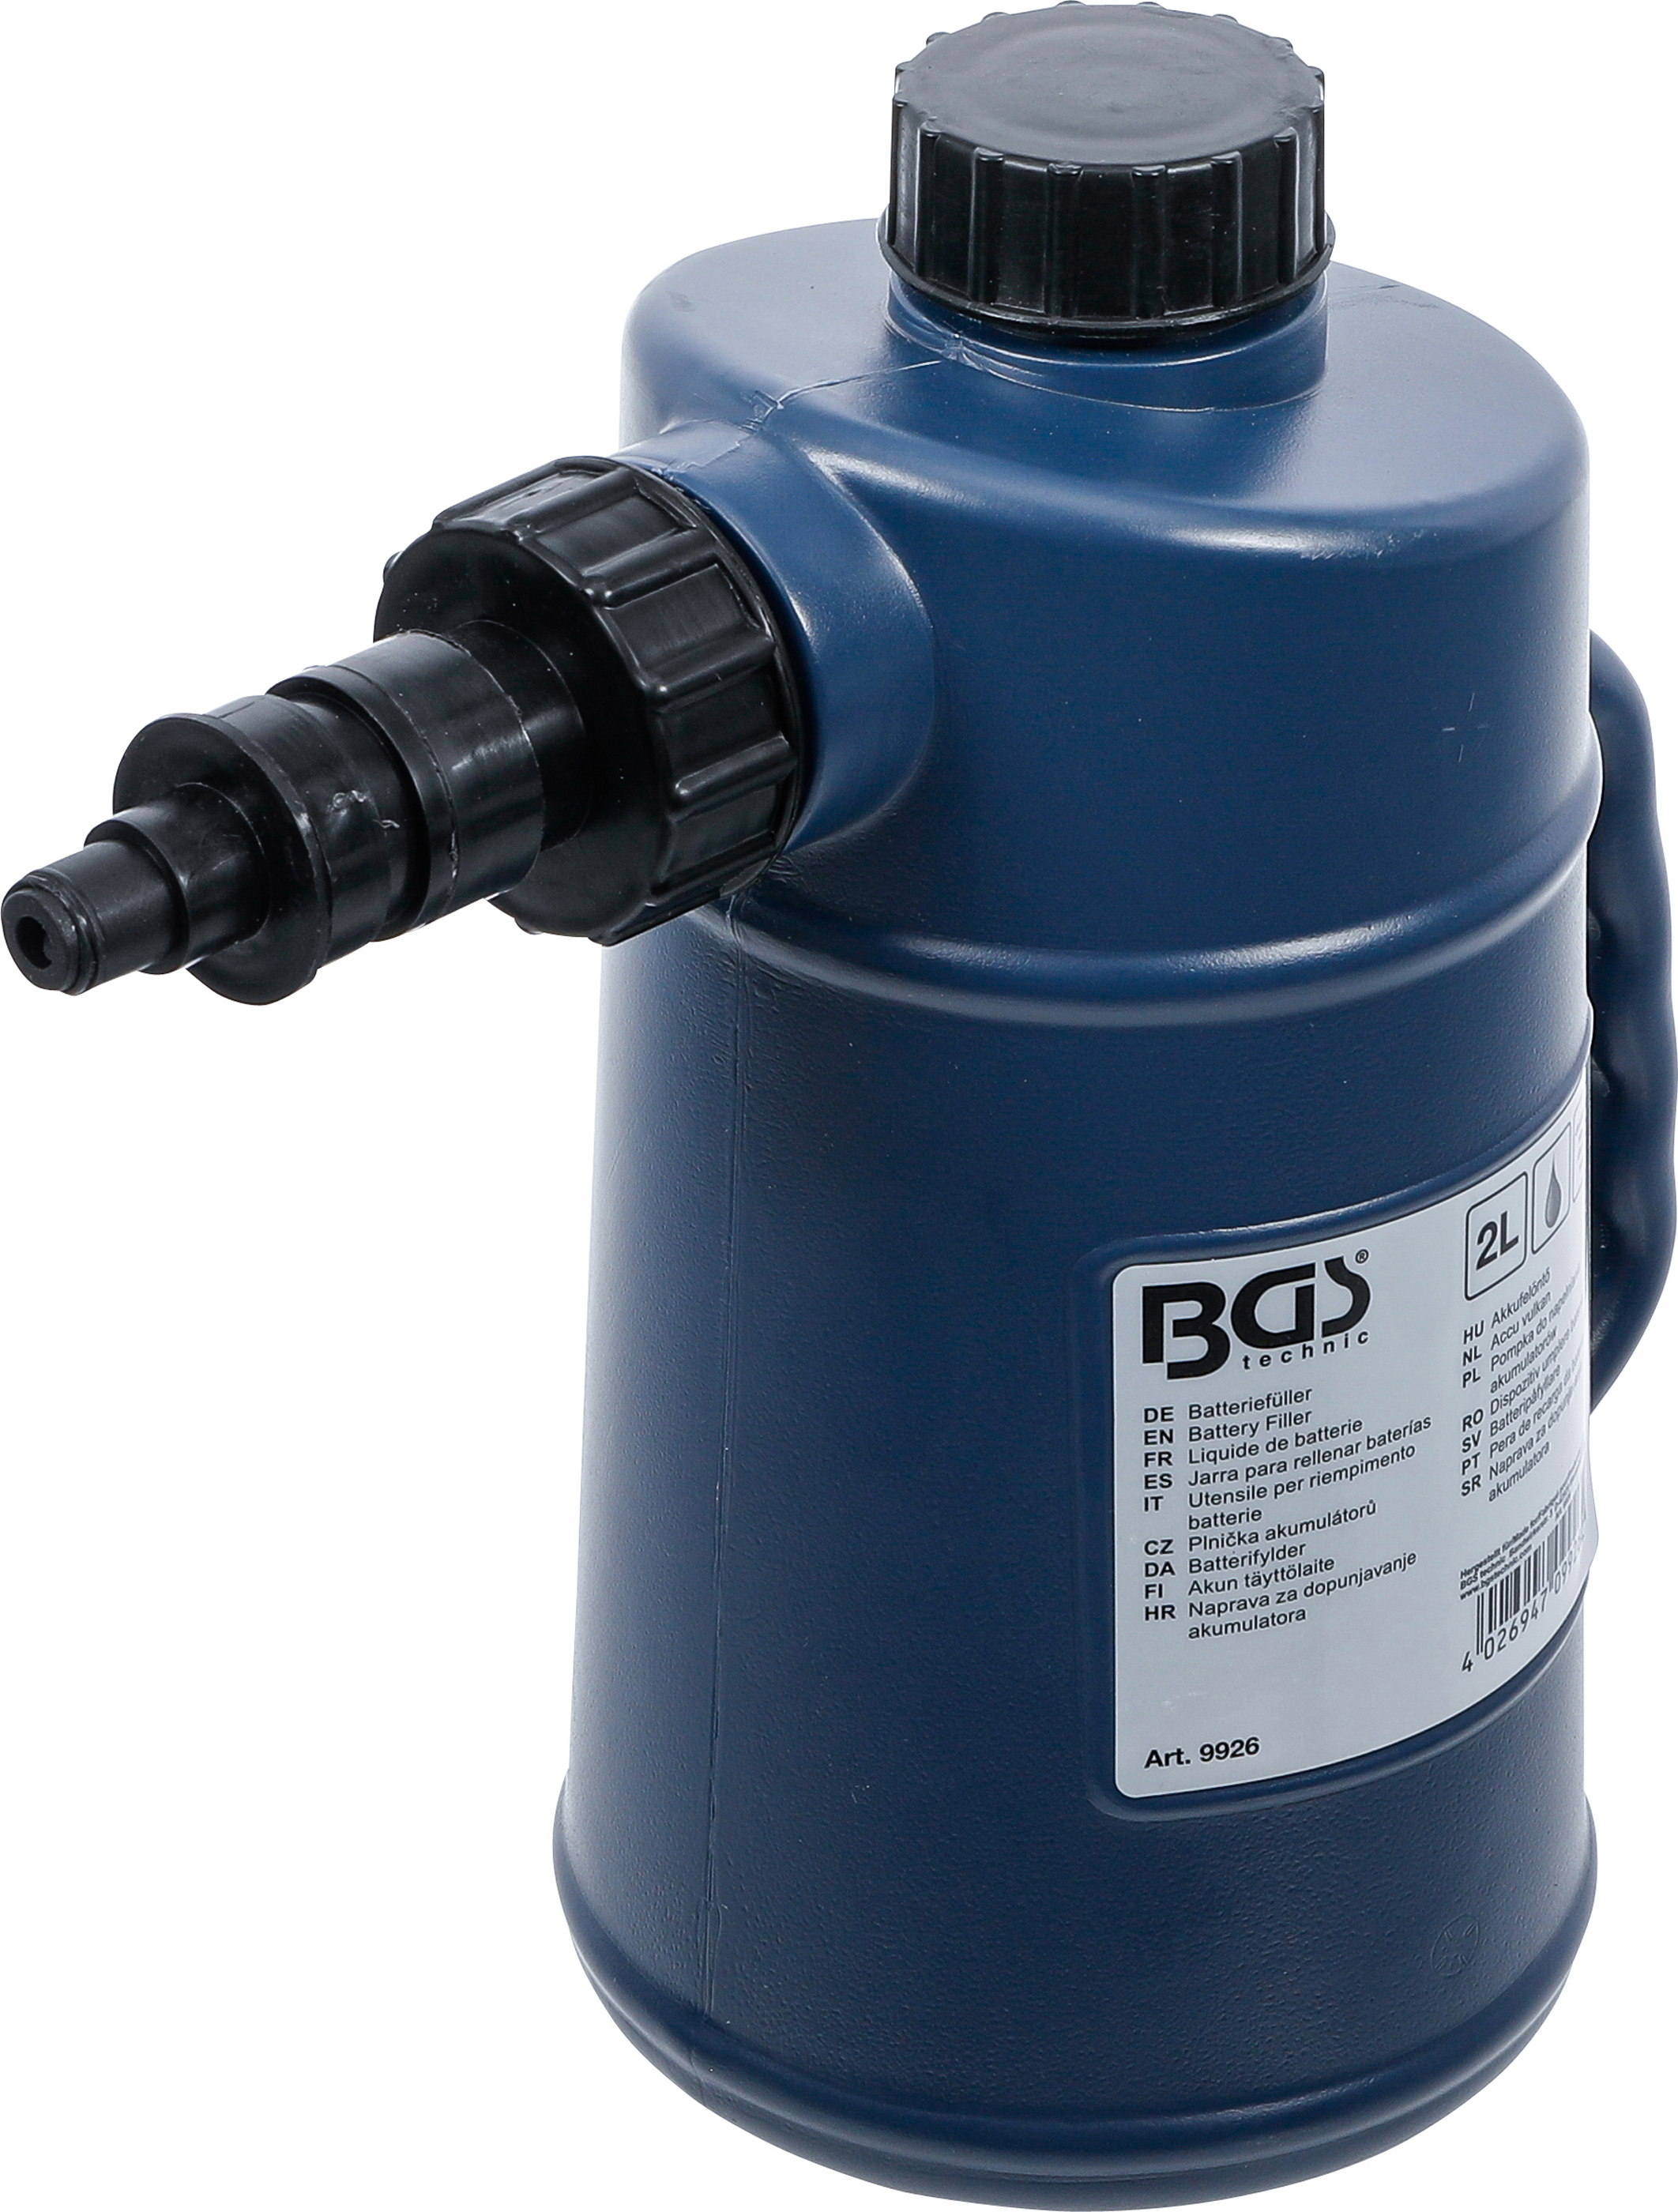 BGS Batteriefüller | 2 Liter